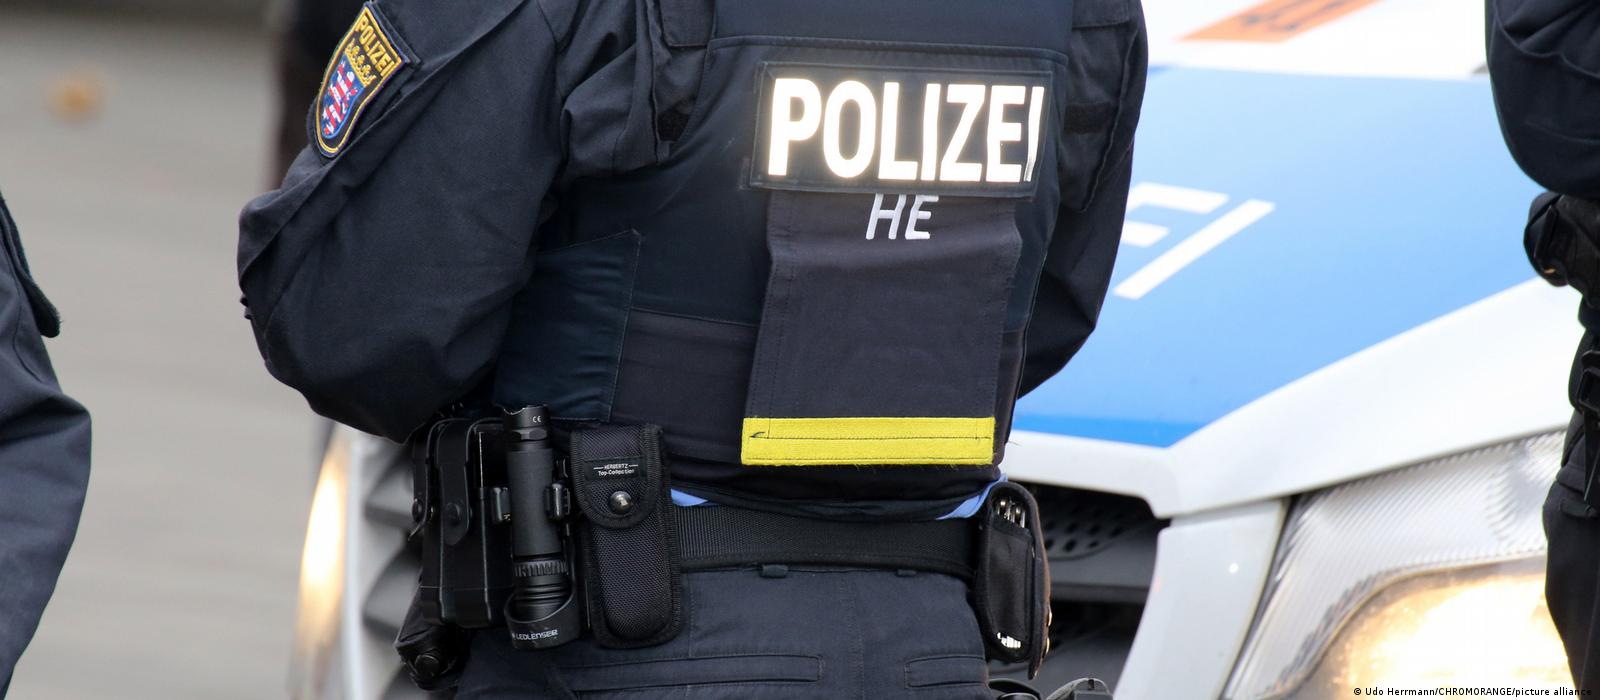 Suspecții pentru presupusul complot de răpire a unui ministru și de răsturnare a guvernului german au devenit oficial inculpați